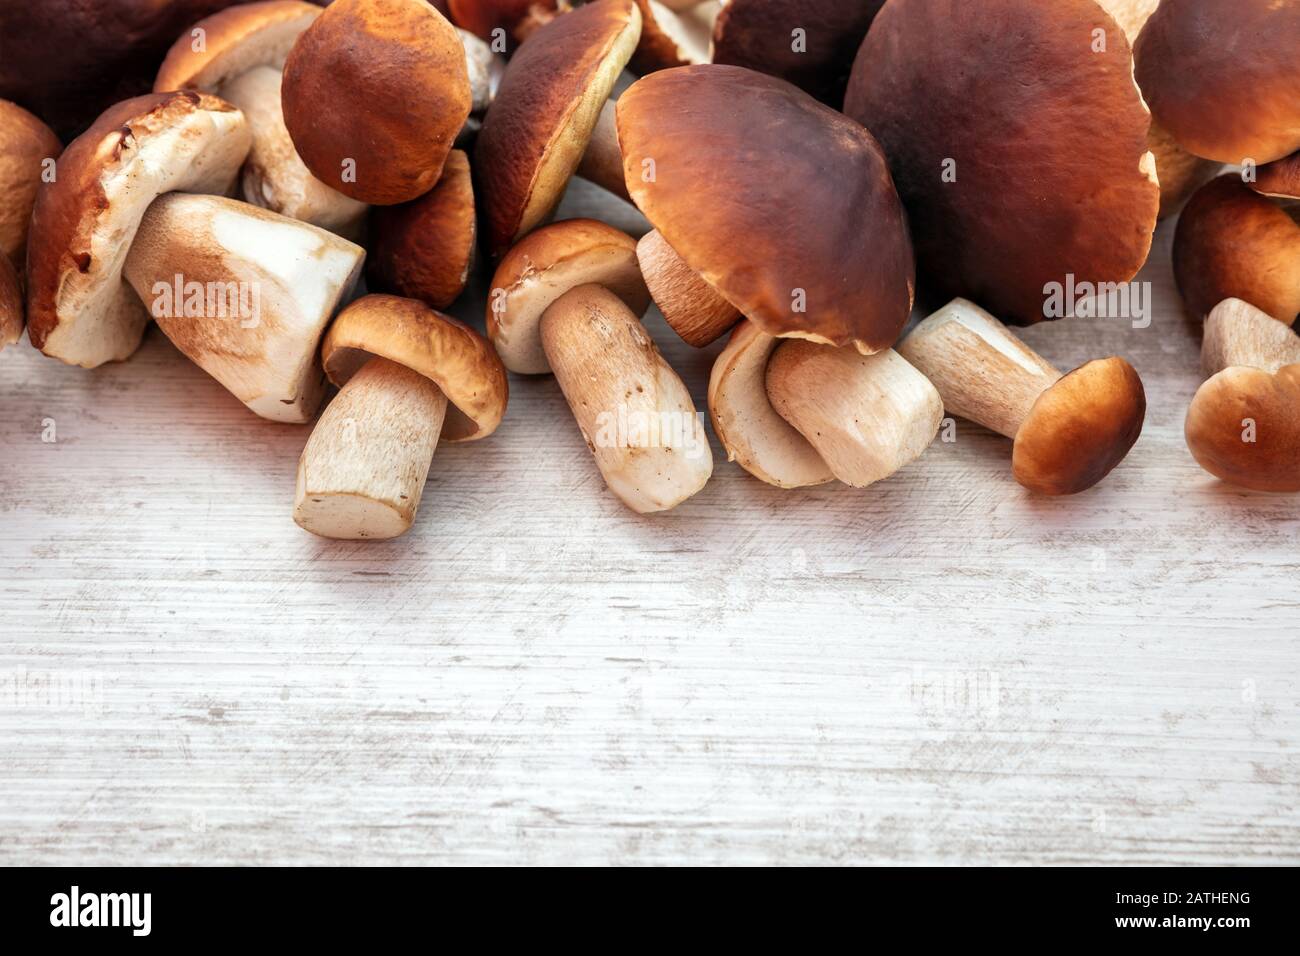 Champignons gastronomiques boletus edulis sur table en bois avec copyspace, champignons porcini frais et crus Banque D'Images